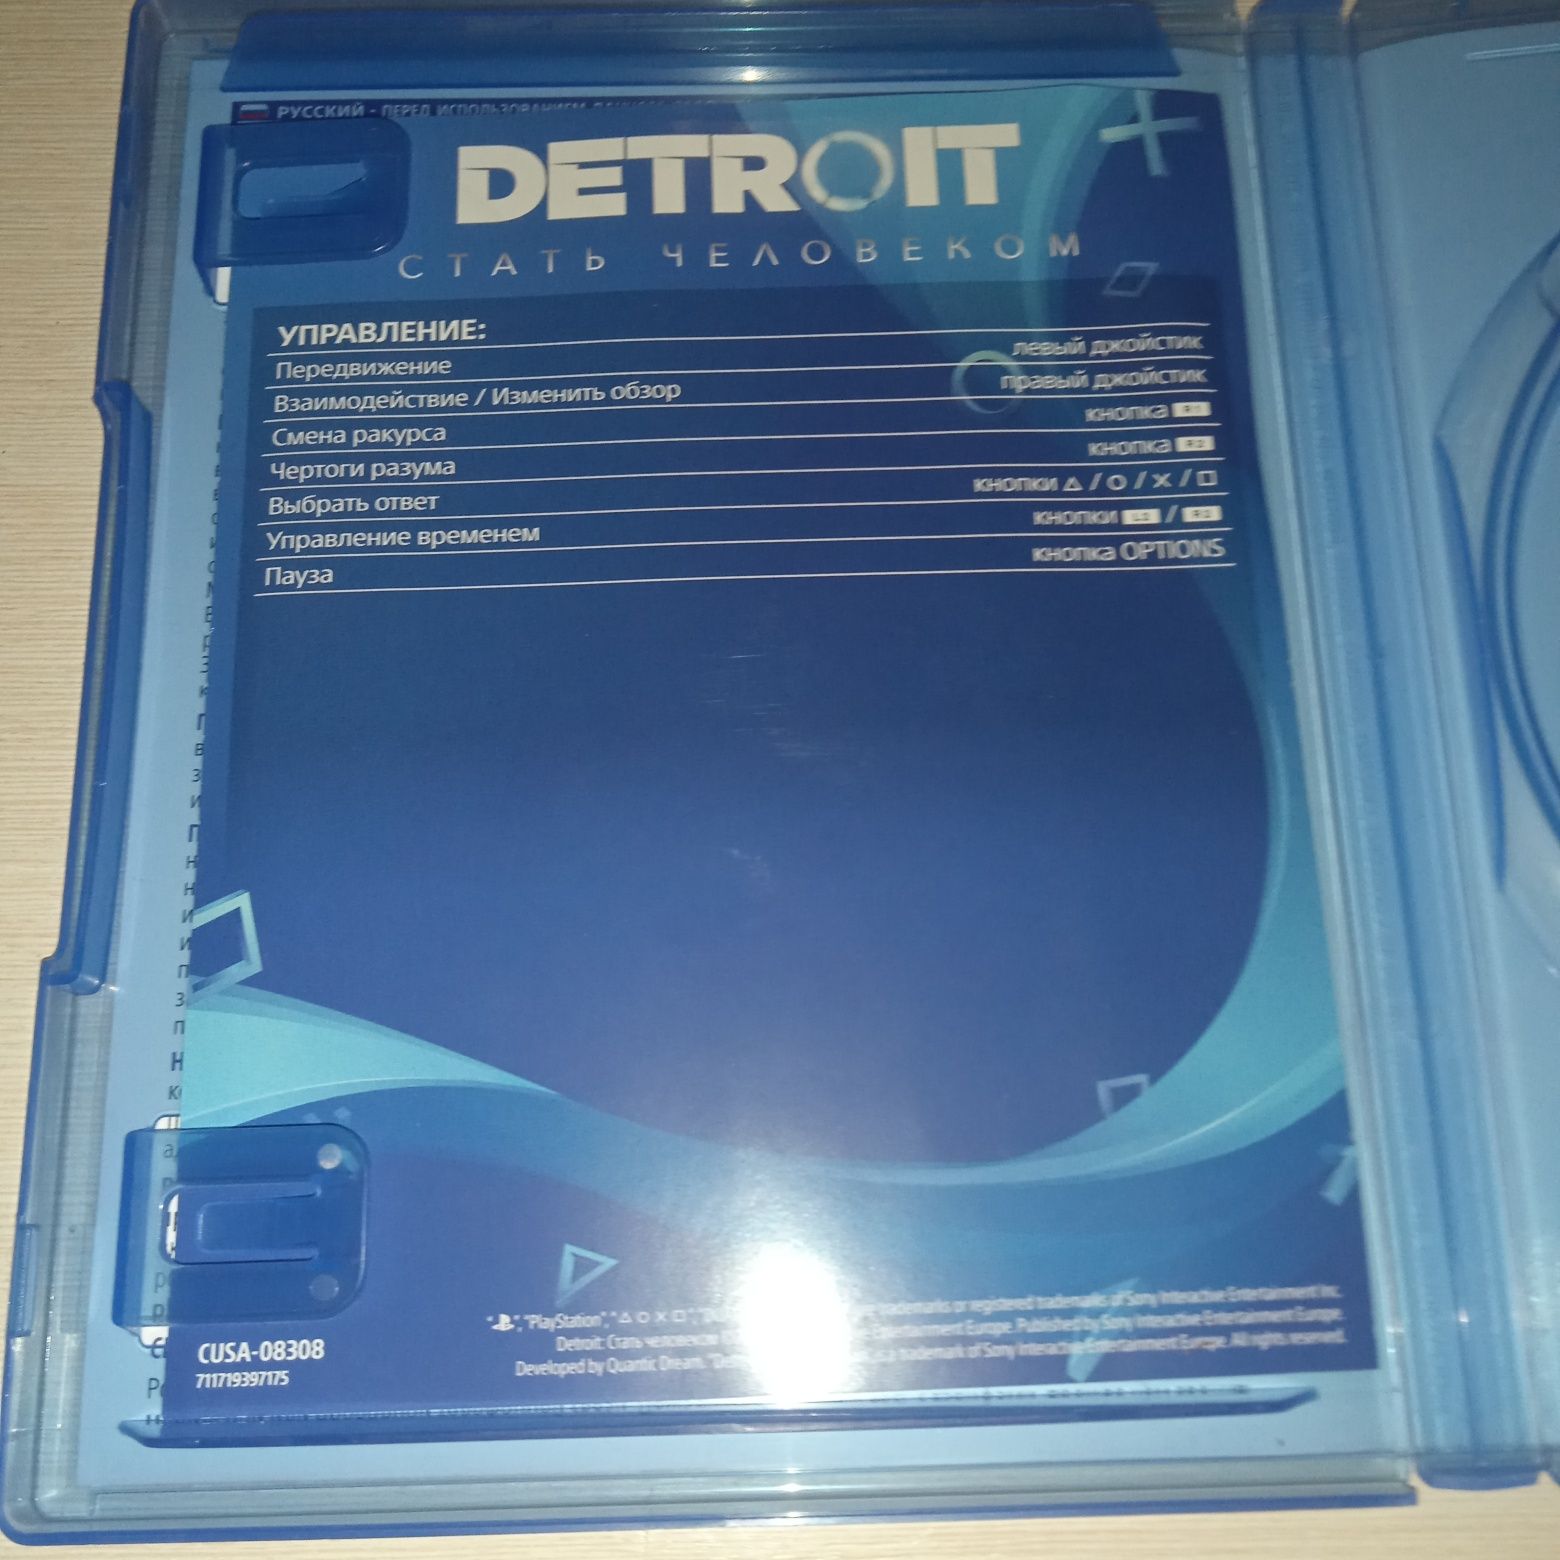 Коробка от Detroit ps4